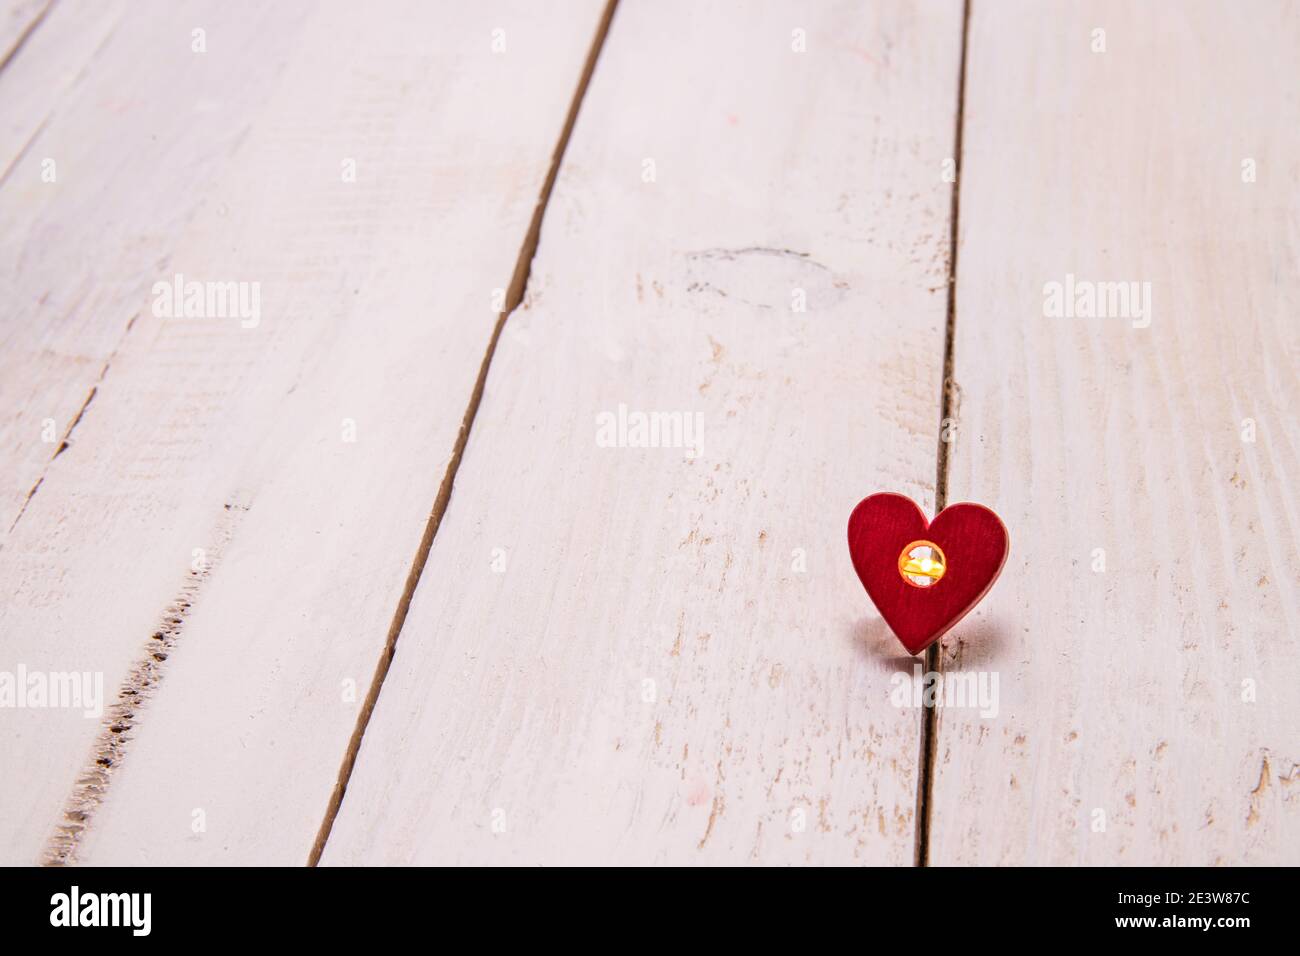 Une petite lumière à l'intérieur d'un coeur sur un fond en bois blanc. Exprimer l'amour avec une pensée simple et profonde. Banque D'Images